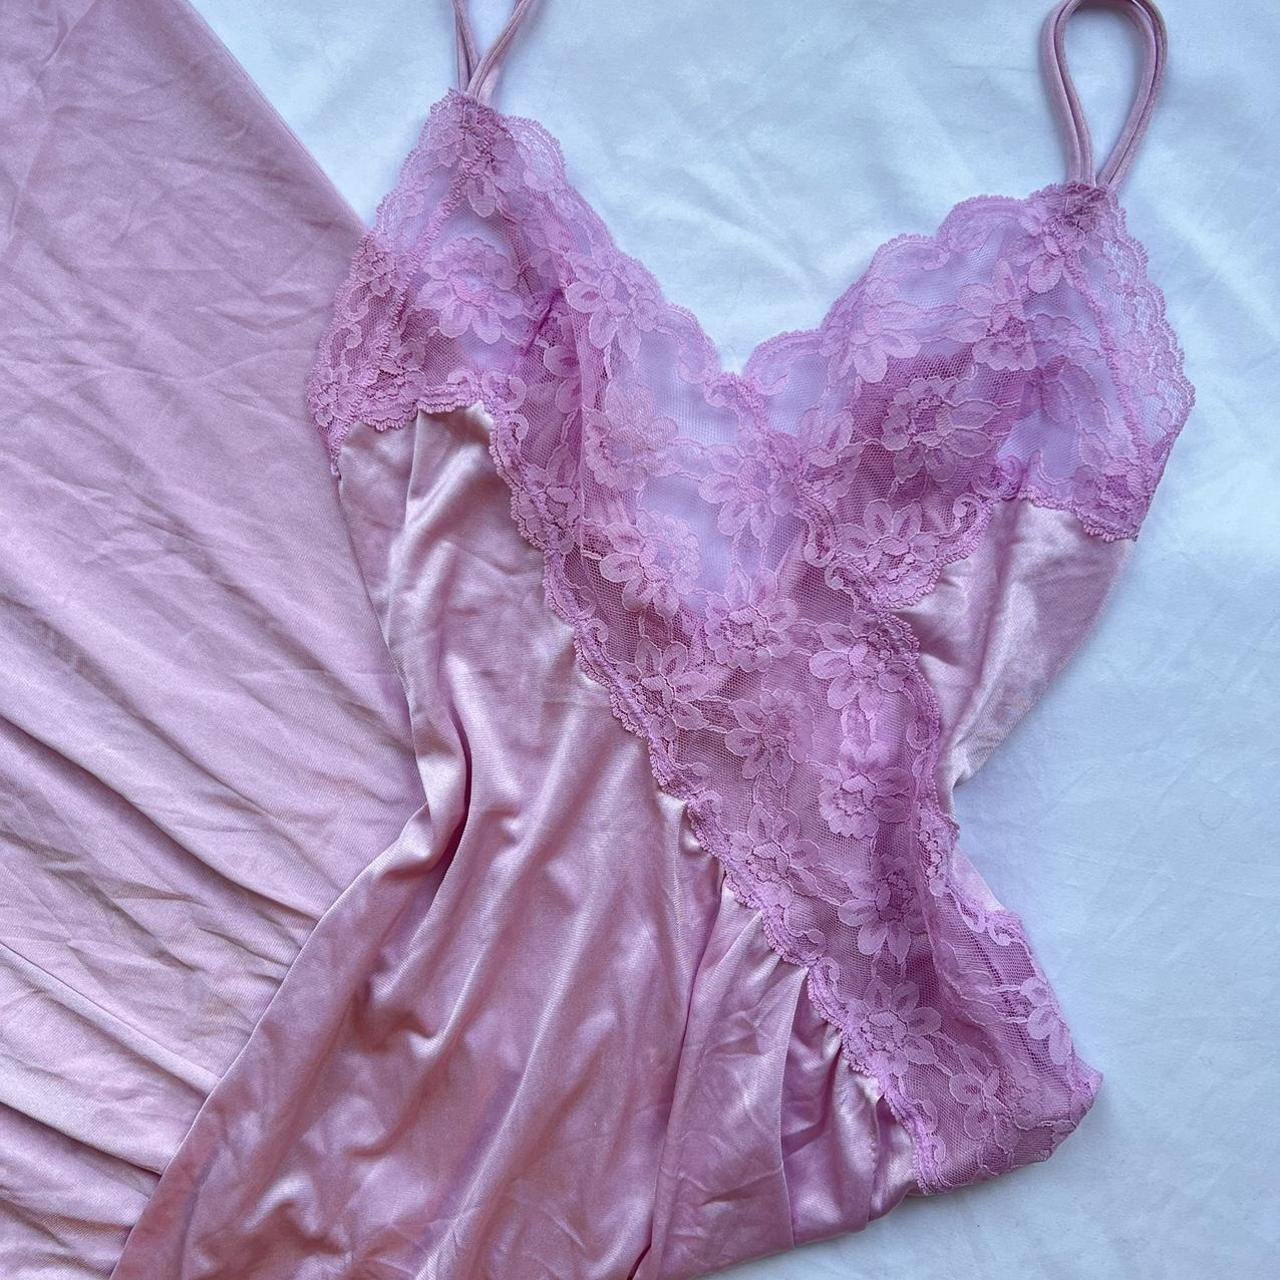 Vintage pink lace lingerie slip dress 44” long... - Depop